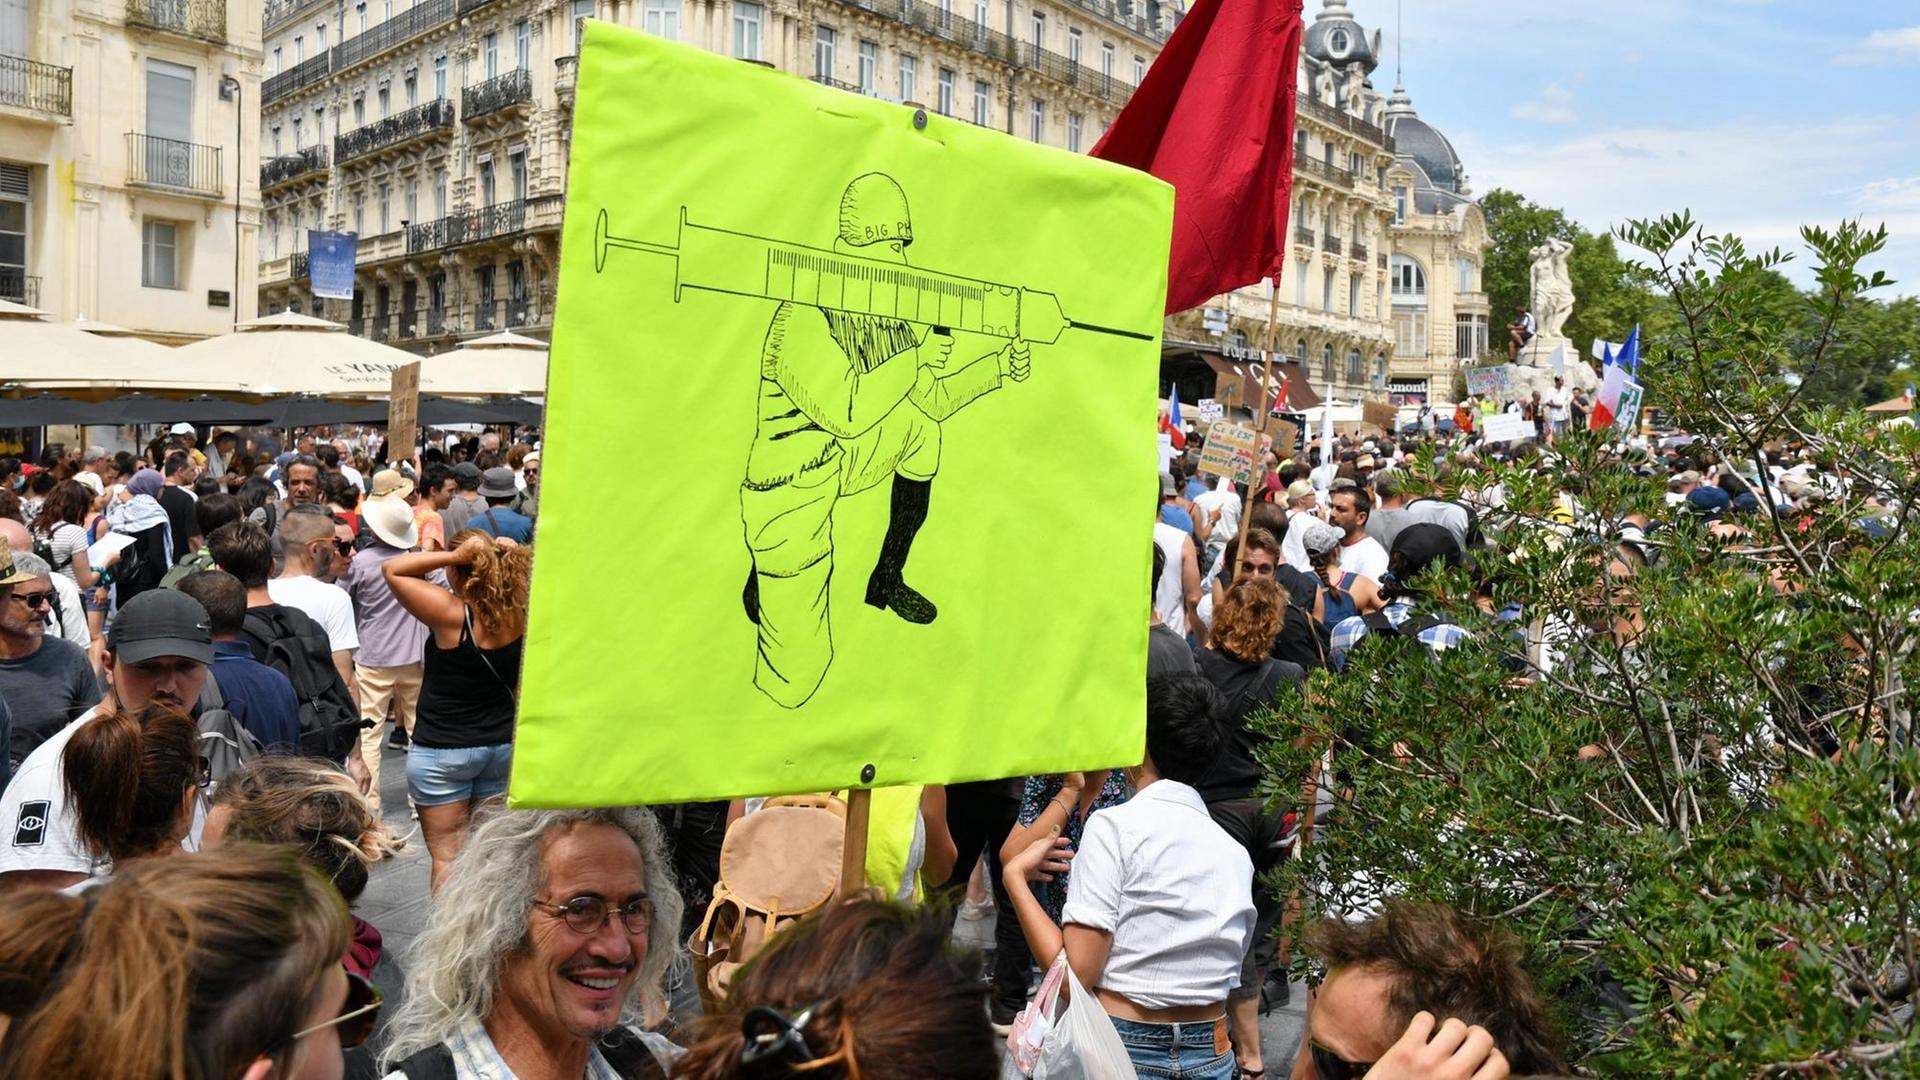 Protestierende in Marseille halten ein grünes Plakat mit einer Zeichnung in die Höhe. Darauf ein Mann, der eine Impfspritze wie eine Waffe hält.